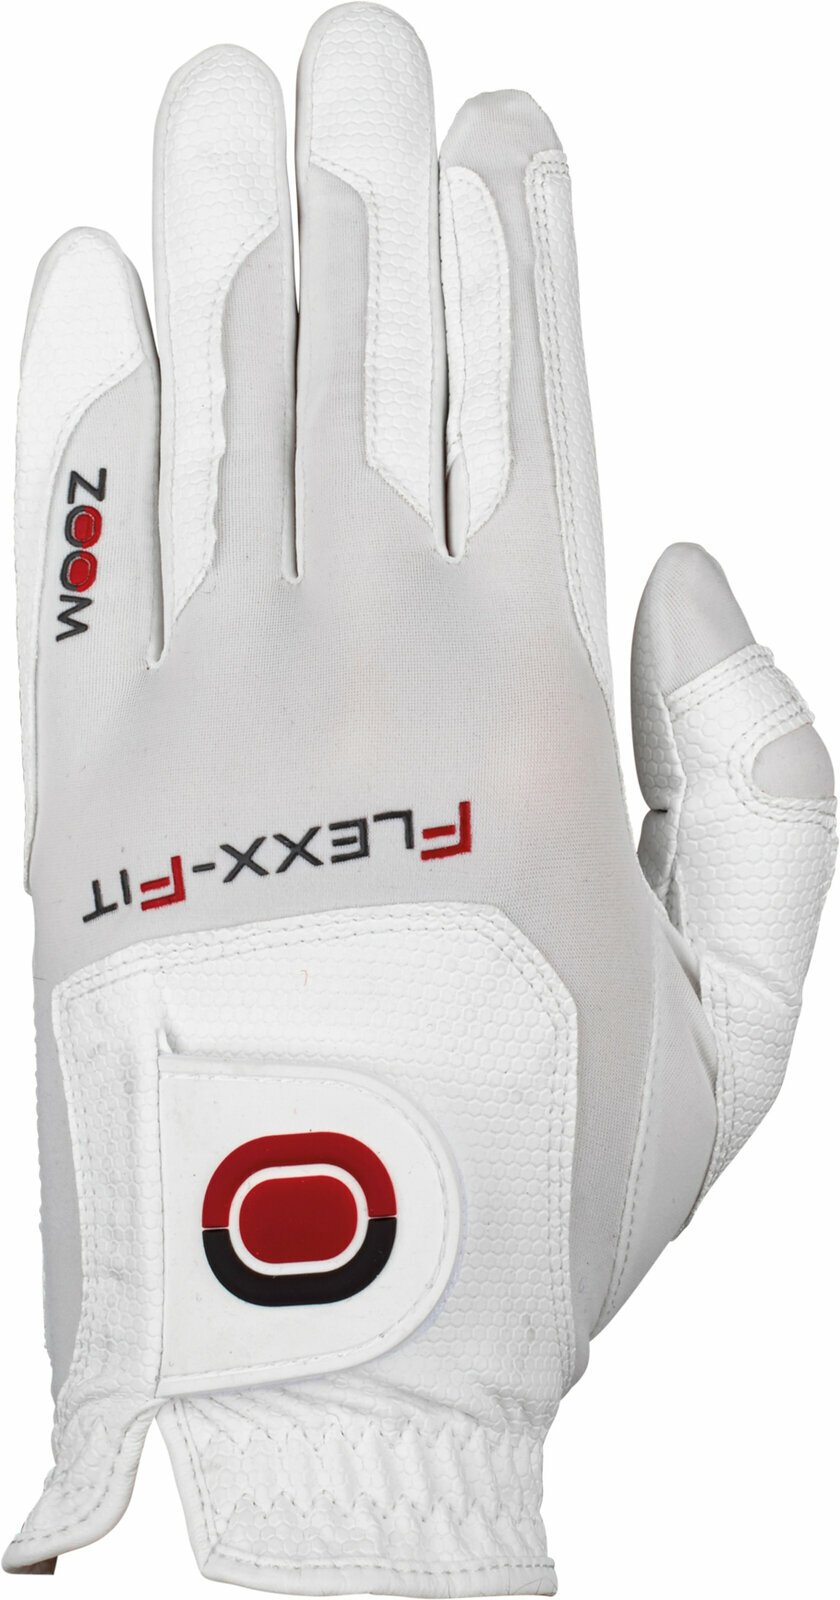 Gloves Zoom Gloves Weather Style Junior Golf Glove White LH